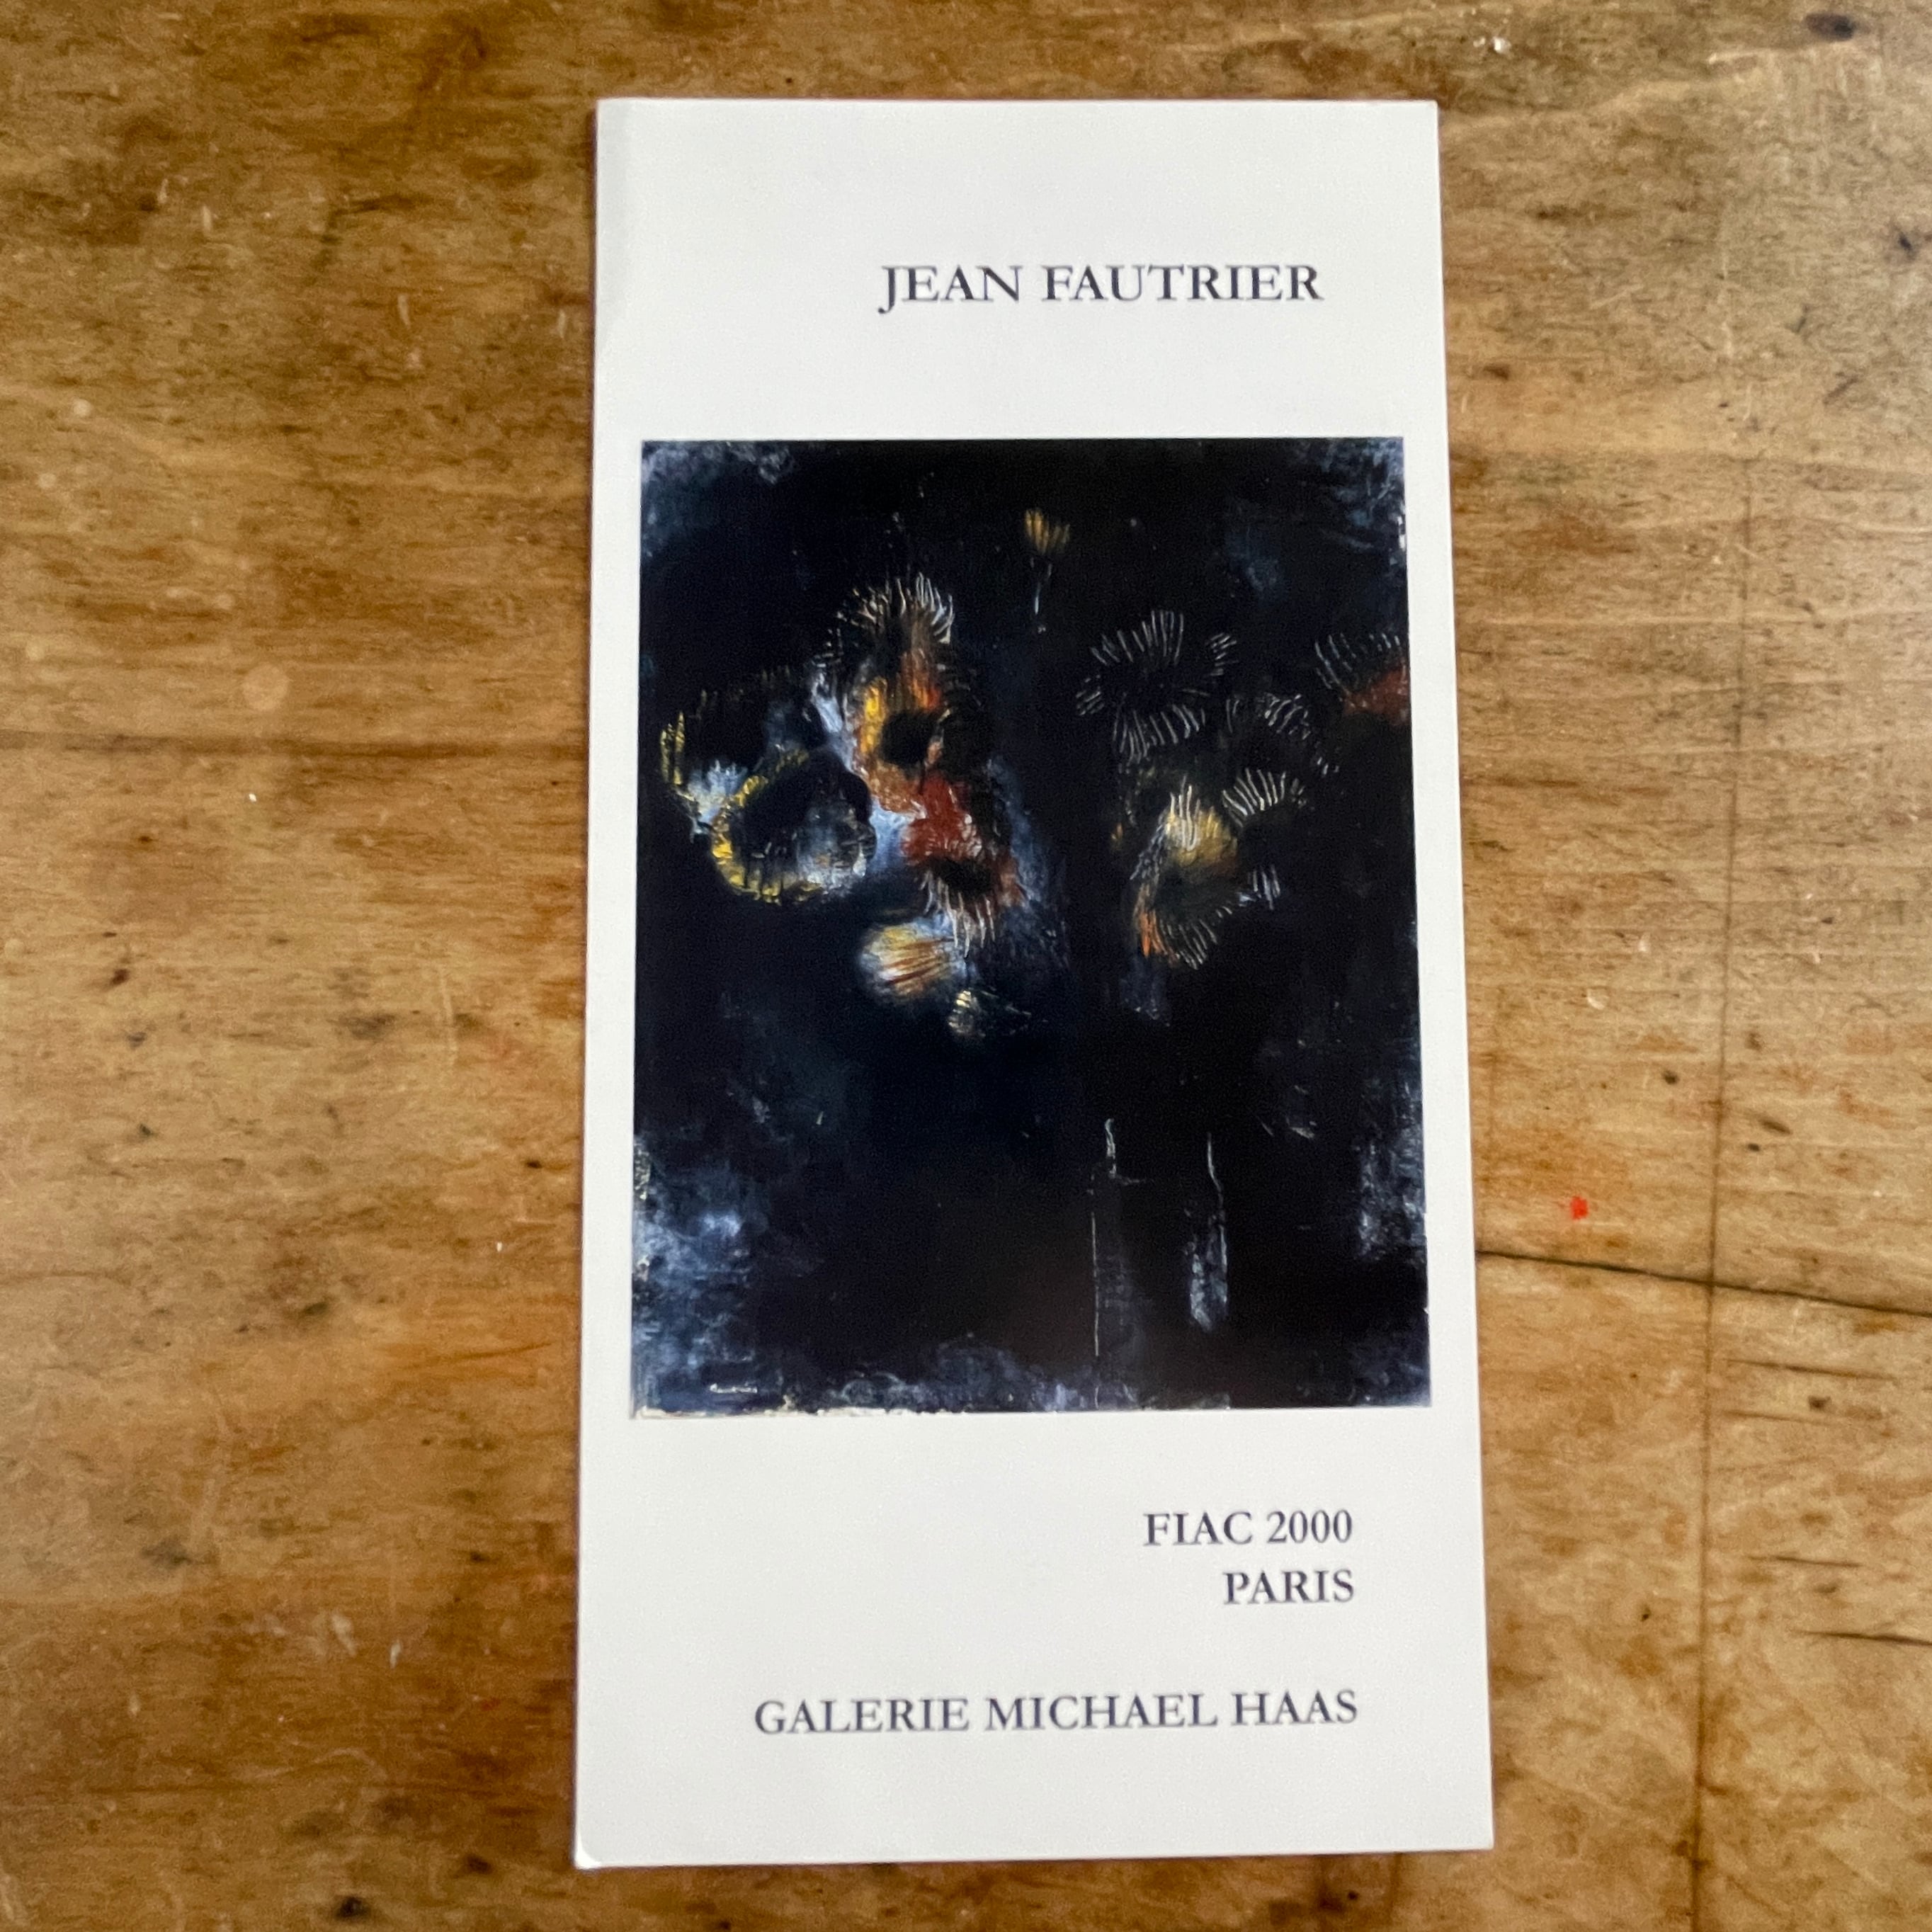 【インヴィテーションカード】Jean Fautrier Oeuvres 1925-1939 Galerie Michael Haas 2000 [310194702]